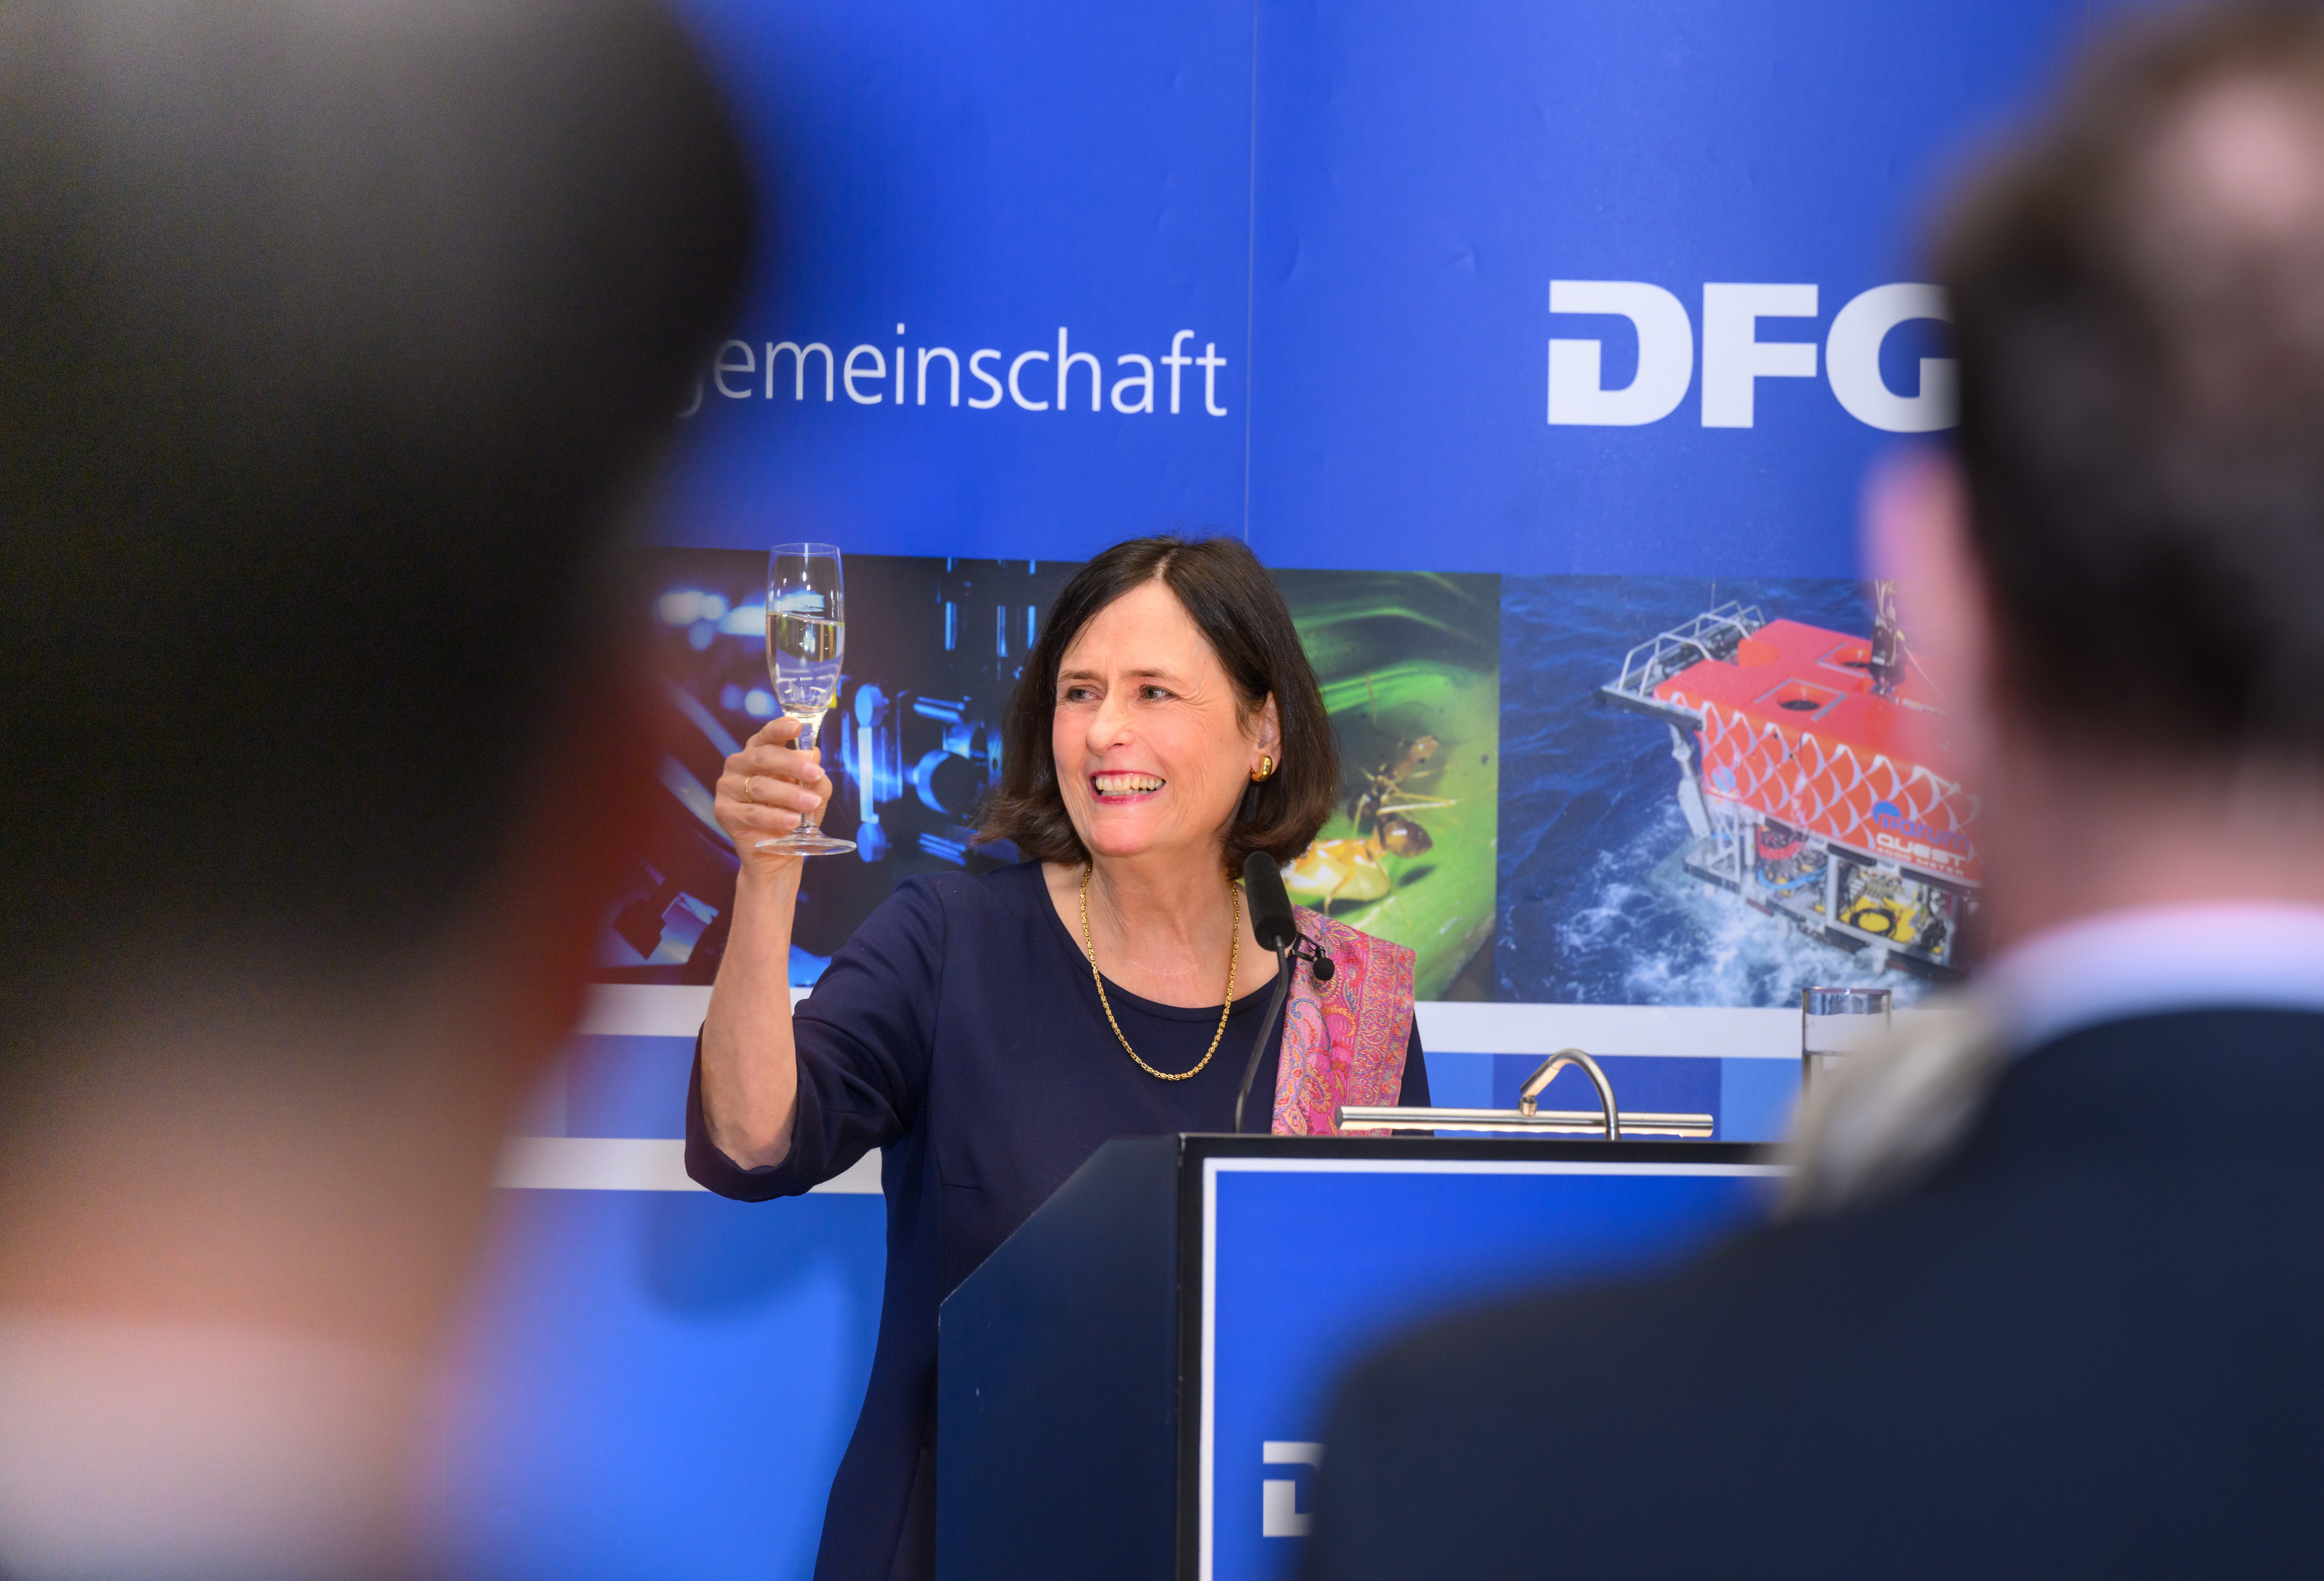 DFG-Präsidentin Prof. Dr. Katja Becker hebt zum Ende ihrer Rede am Pult ein Sektglas